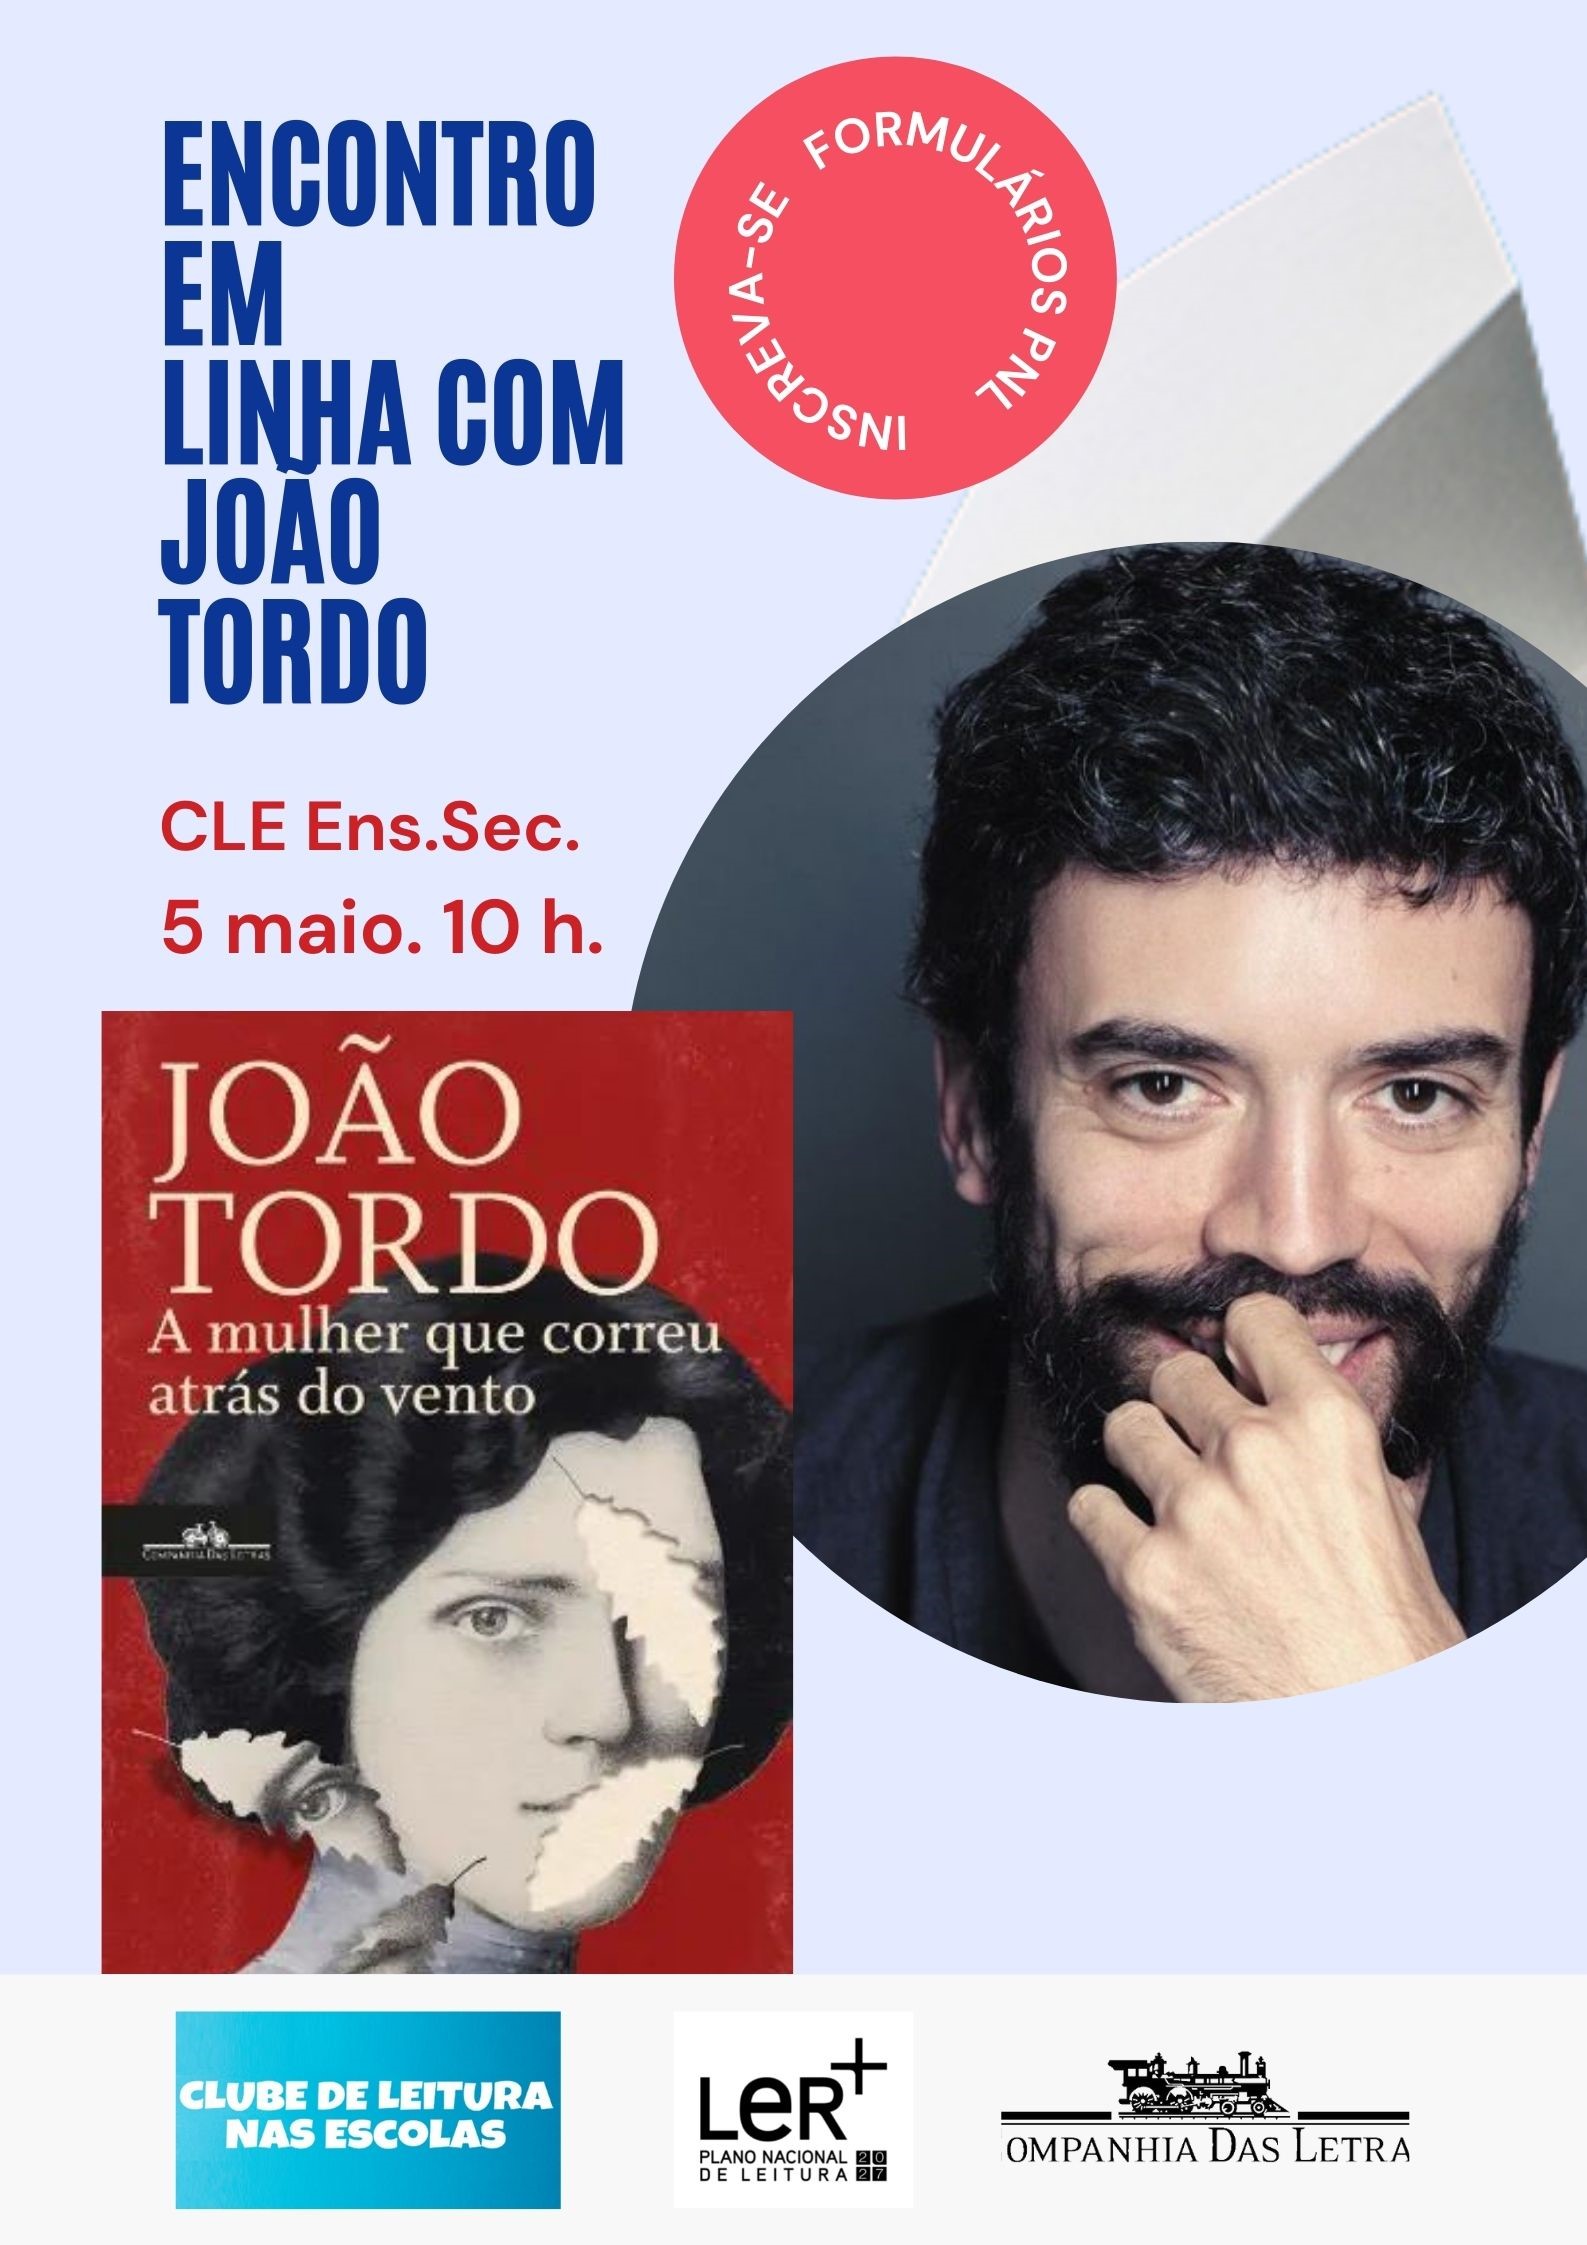 CLE 5 de maio. Encontro em linha com João Tordo. 